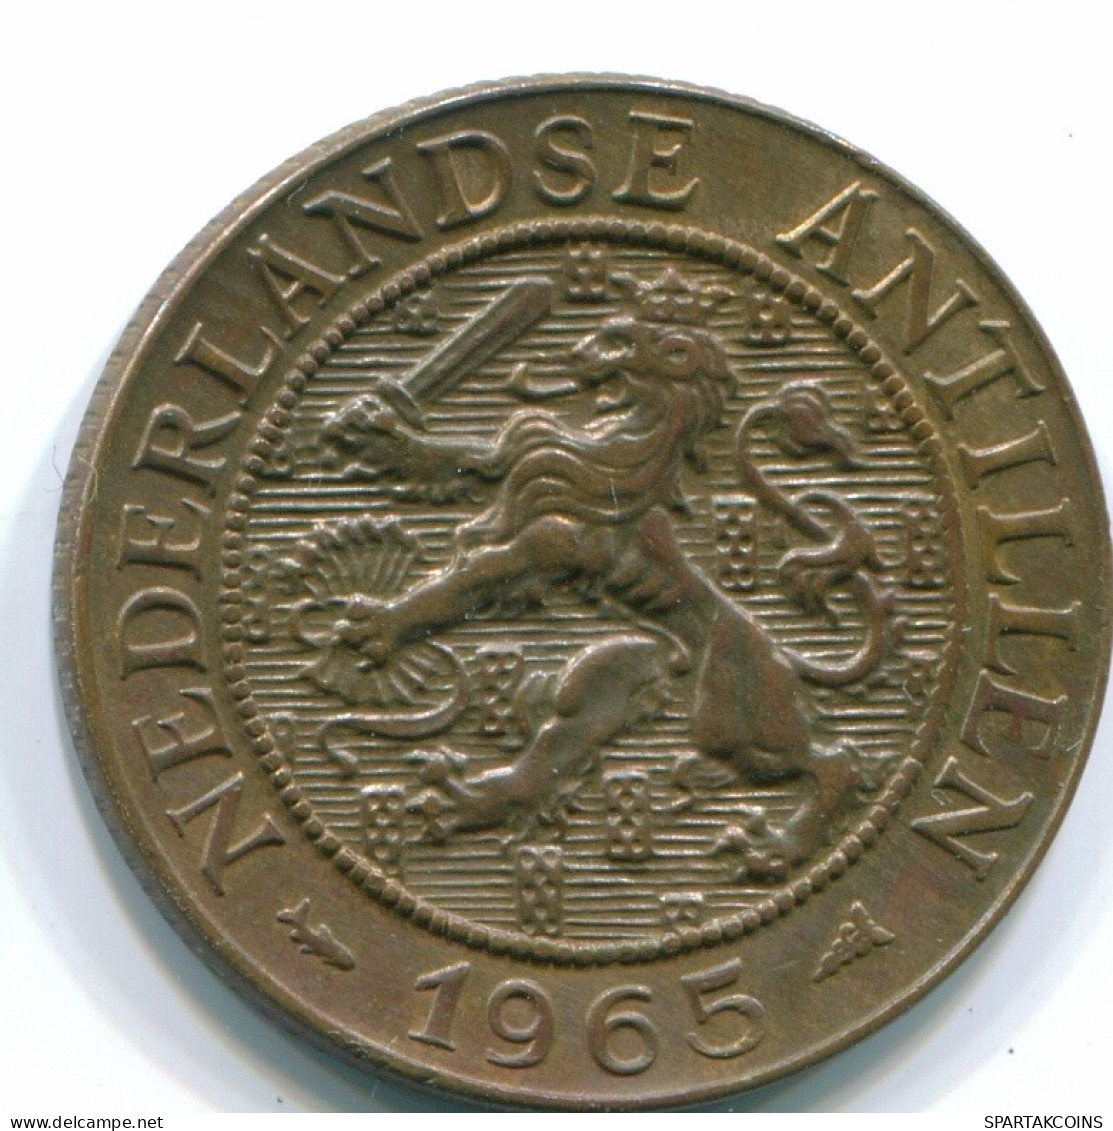 2 1/2 CENT 1965 CURACAO NIEDERLANDE NETHERLANDS Koloniale Münze #S10201.D.A - Curacao